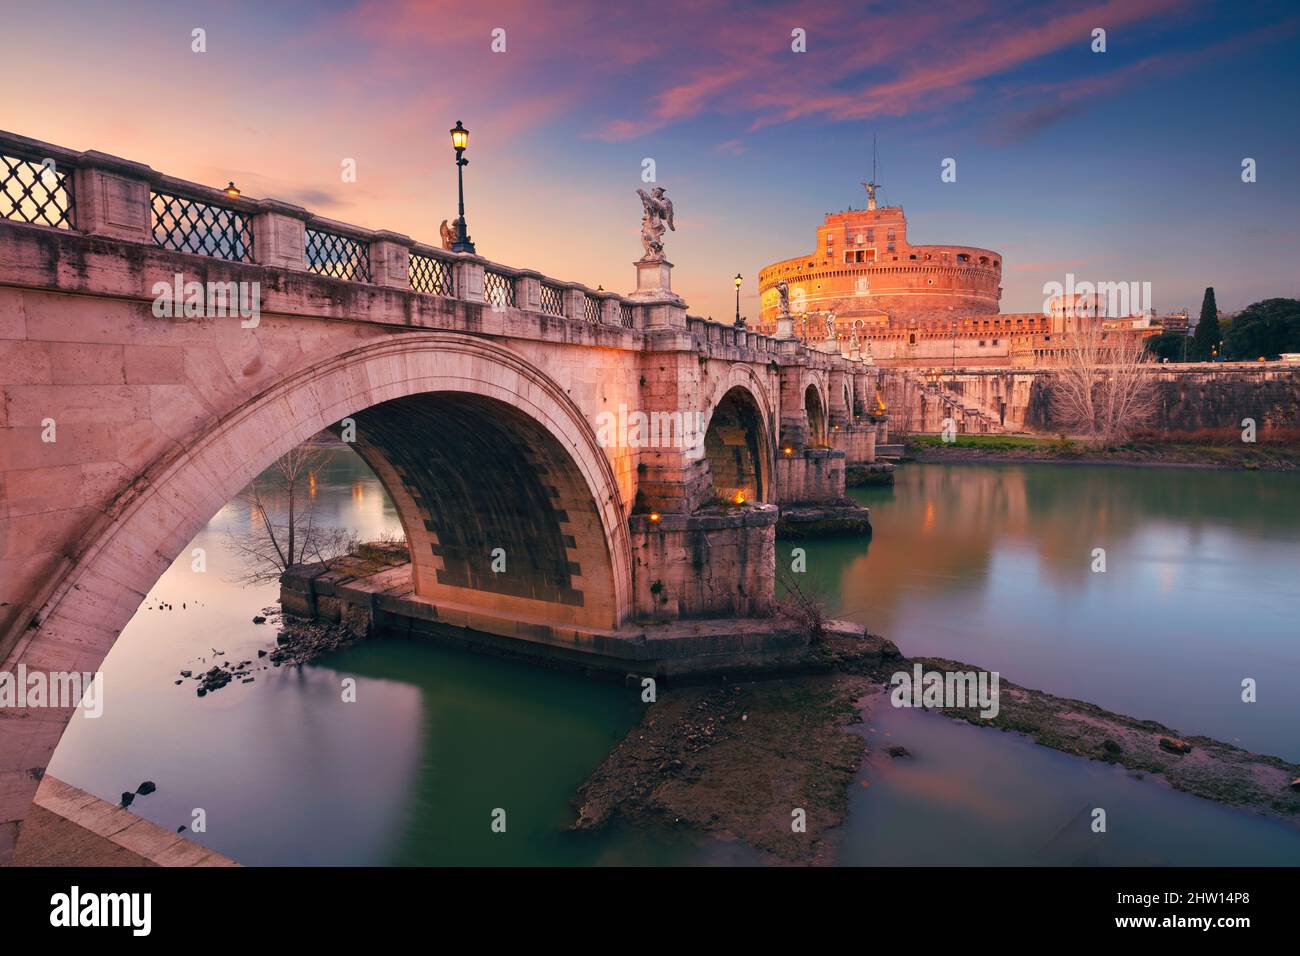 Roma, Italia. Imagen del Castillo del Santo Ángel y del Puente del Santo Ángel sobre el río Tíber en Roma al atardecer. Foto de stock